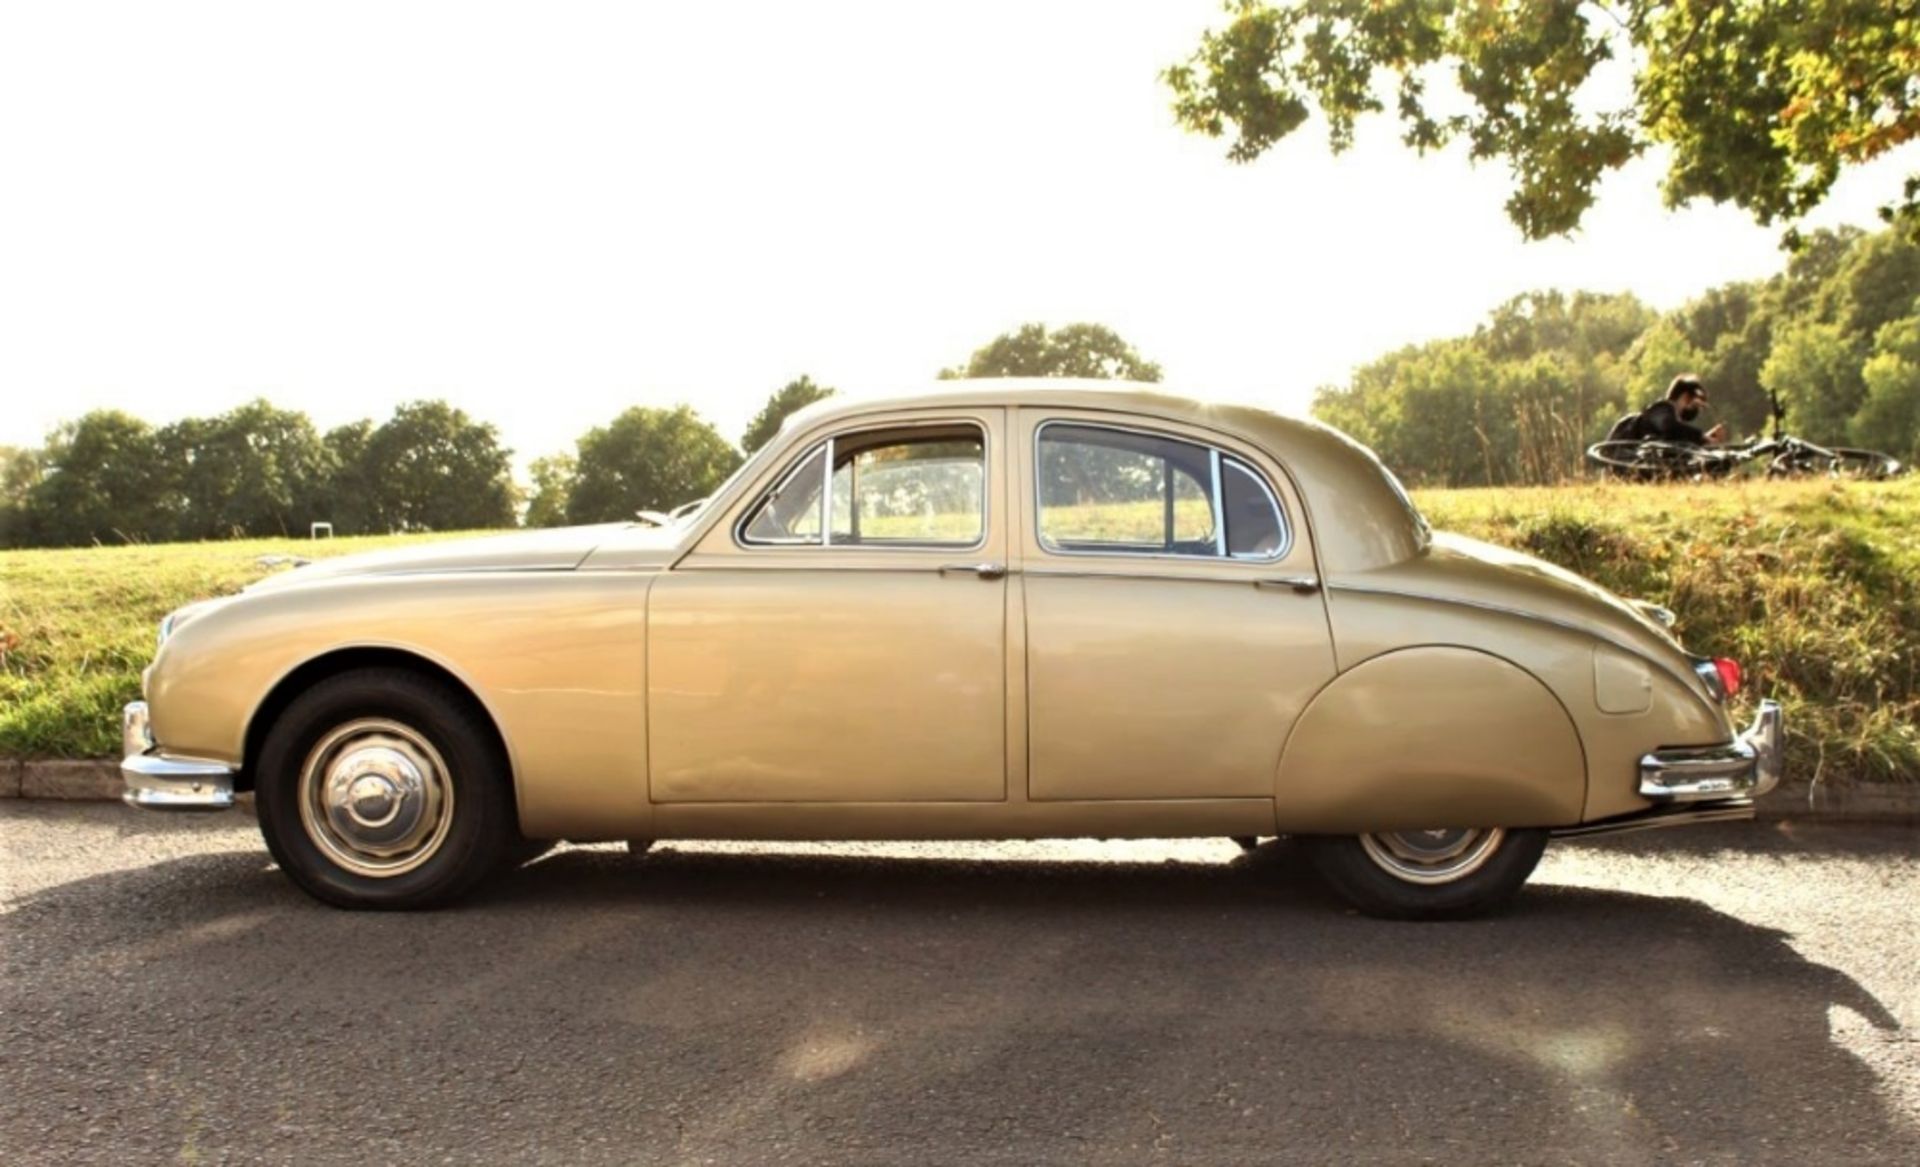 1958 JAGUAR ‘MARK 1’ 2.4 LITRE SALOON Registration Number: 612 UYT Chassis Number: S912121 - Image 4 of 13